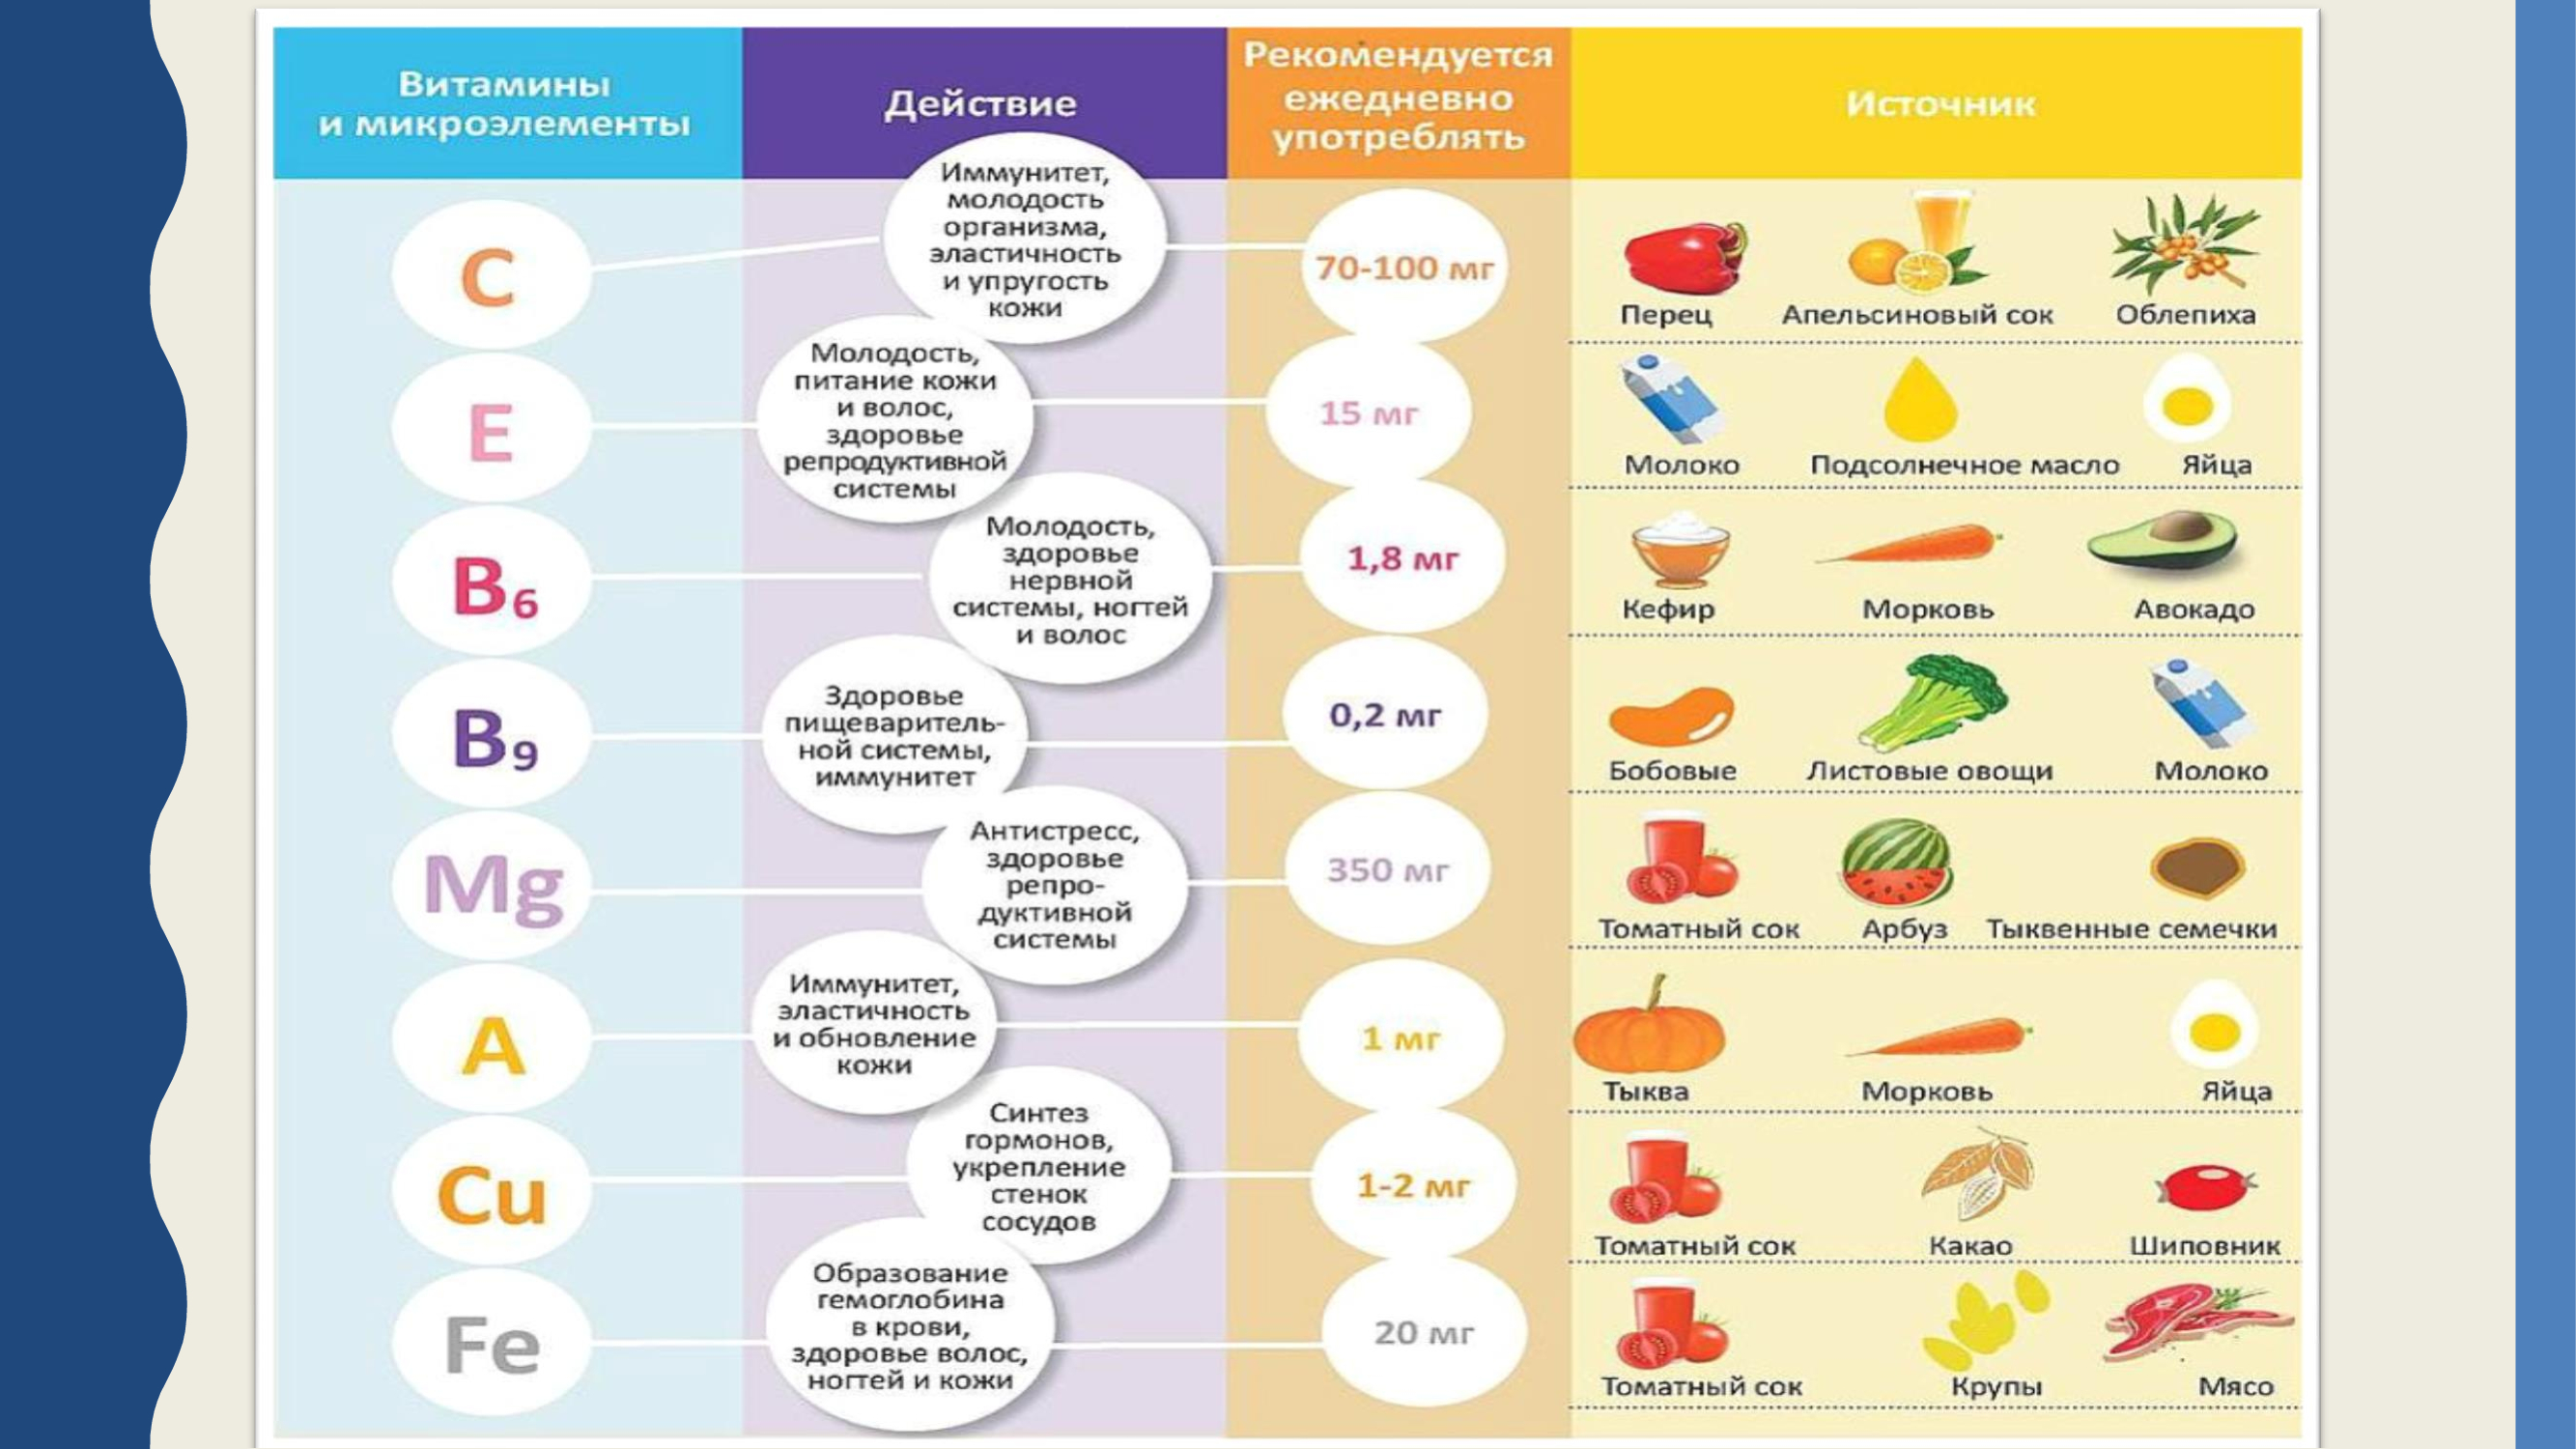 Рациональное использование витаминов. Витамины и микроэлементы. Здоровое питание таблица витаминов. Источник витаминов и микроэлементов. Микроэлементы и витамины в пище.